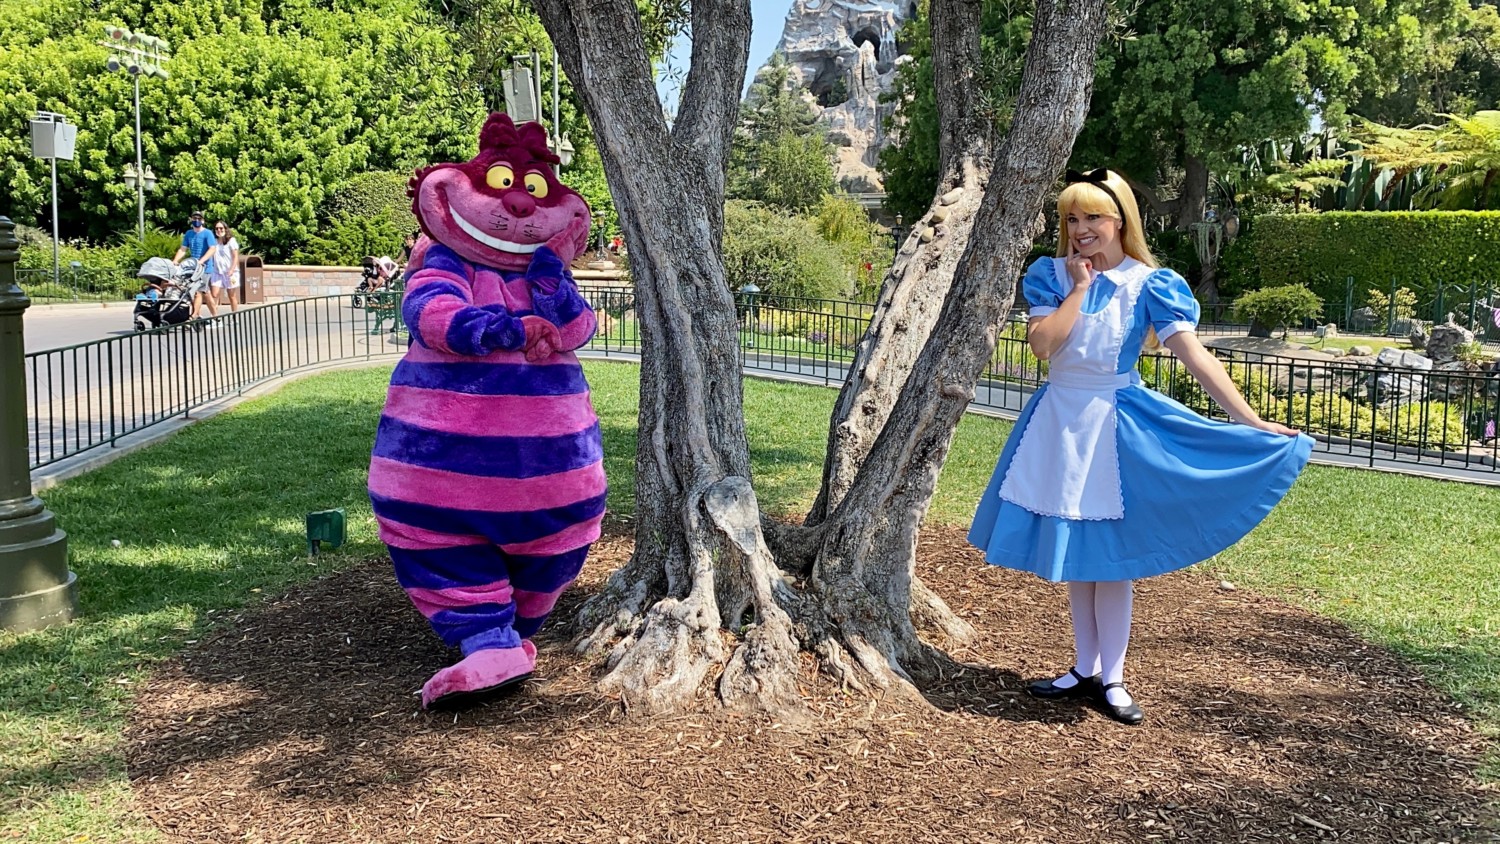 Alice and Cheshire Cat at Disneyland